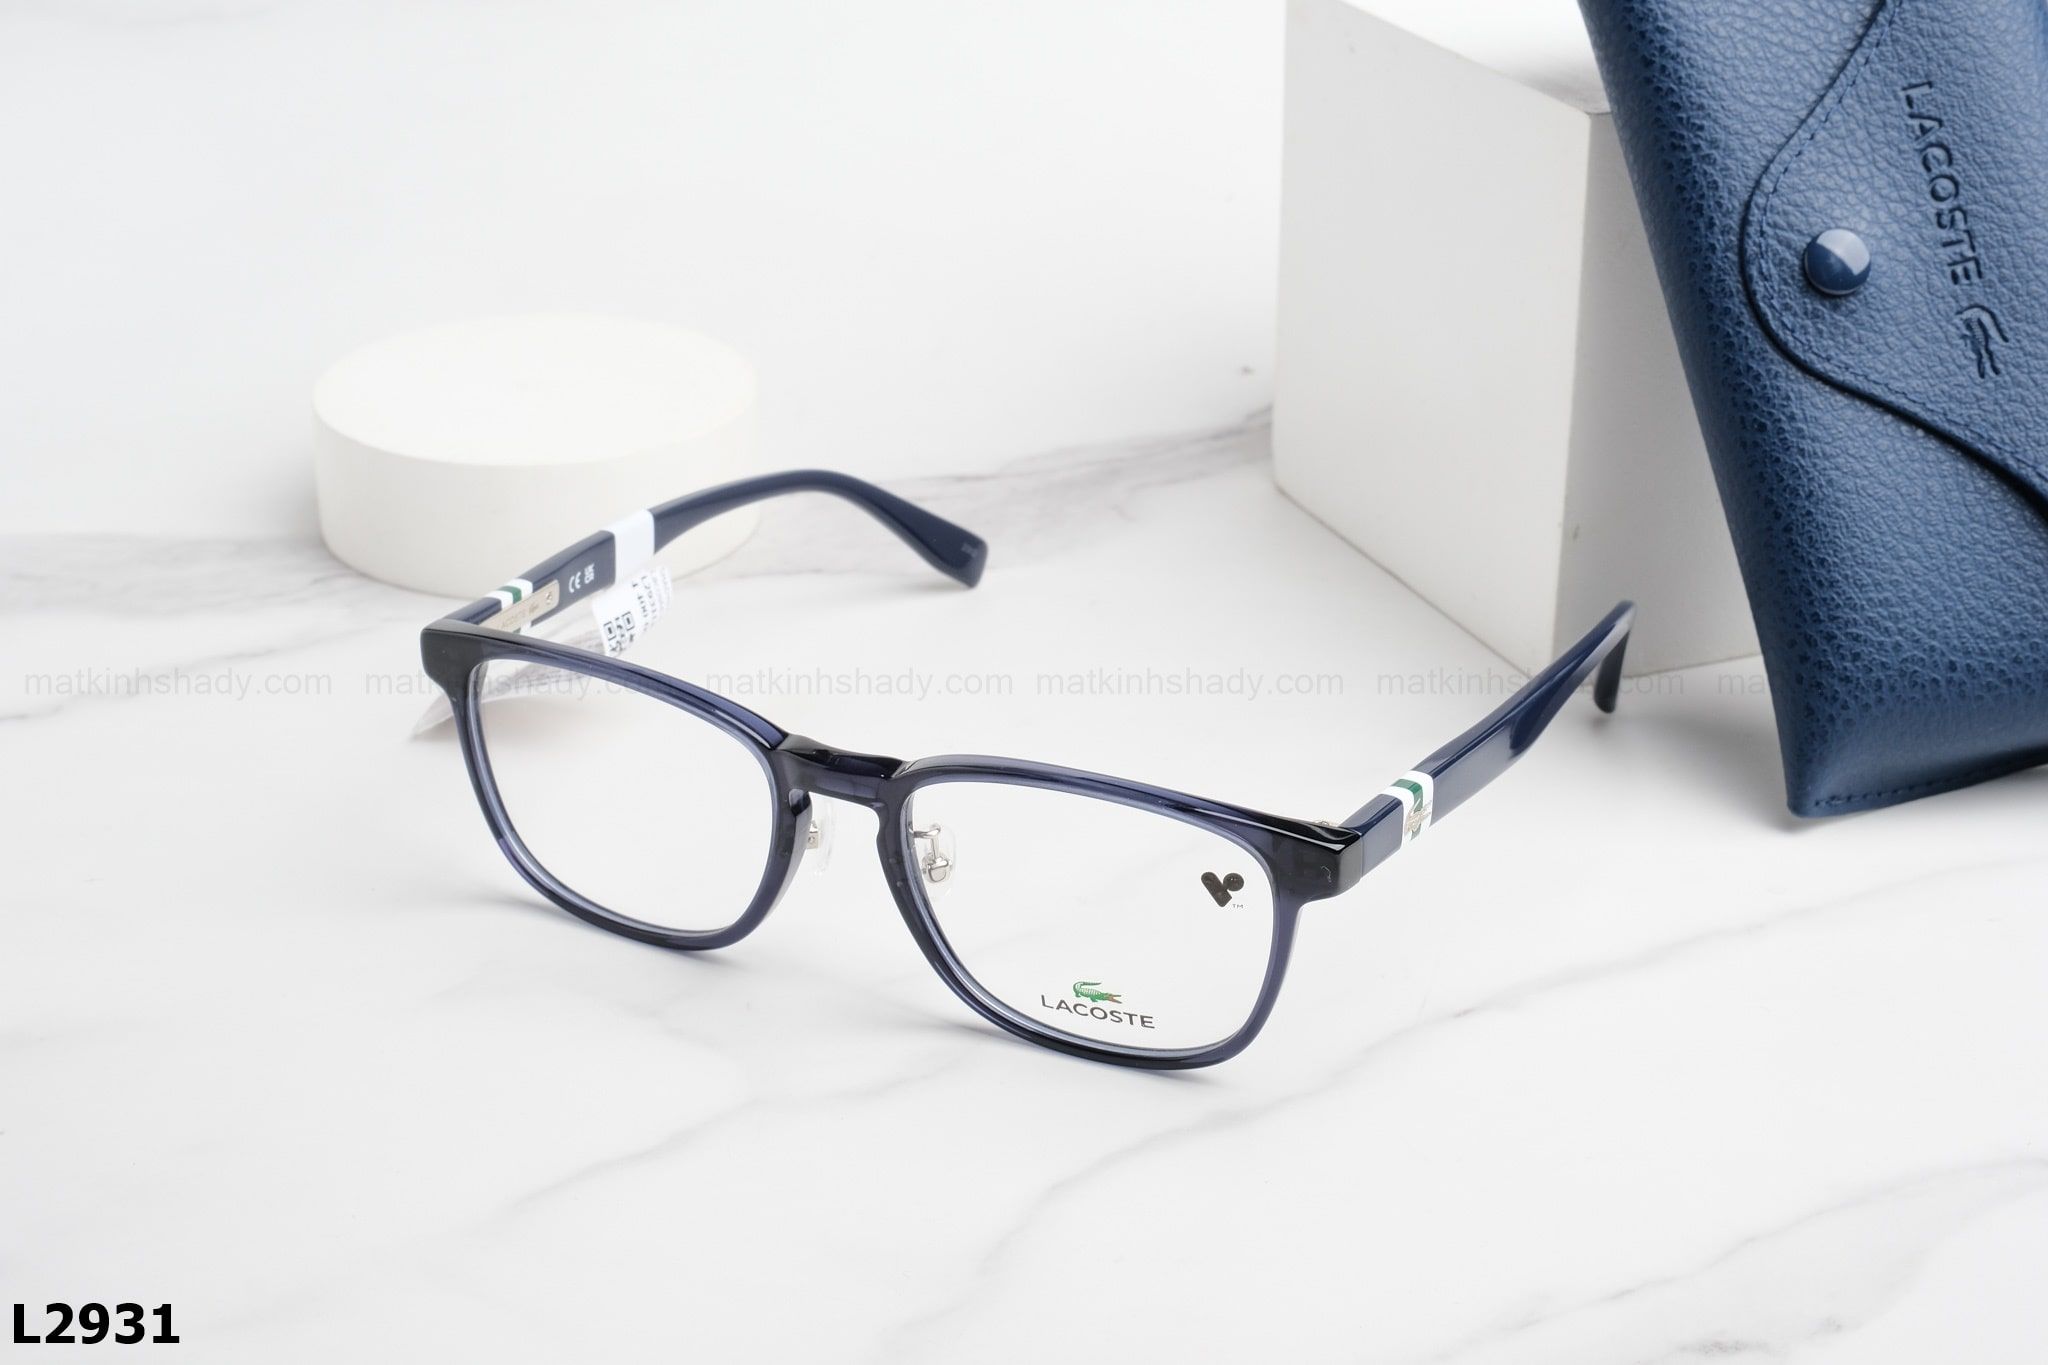  Lacoste Eyewear - Glasses - L2931 